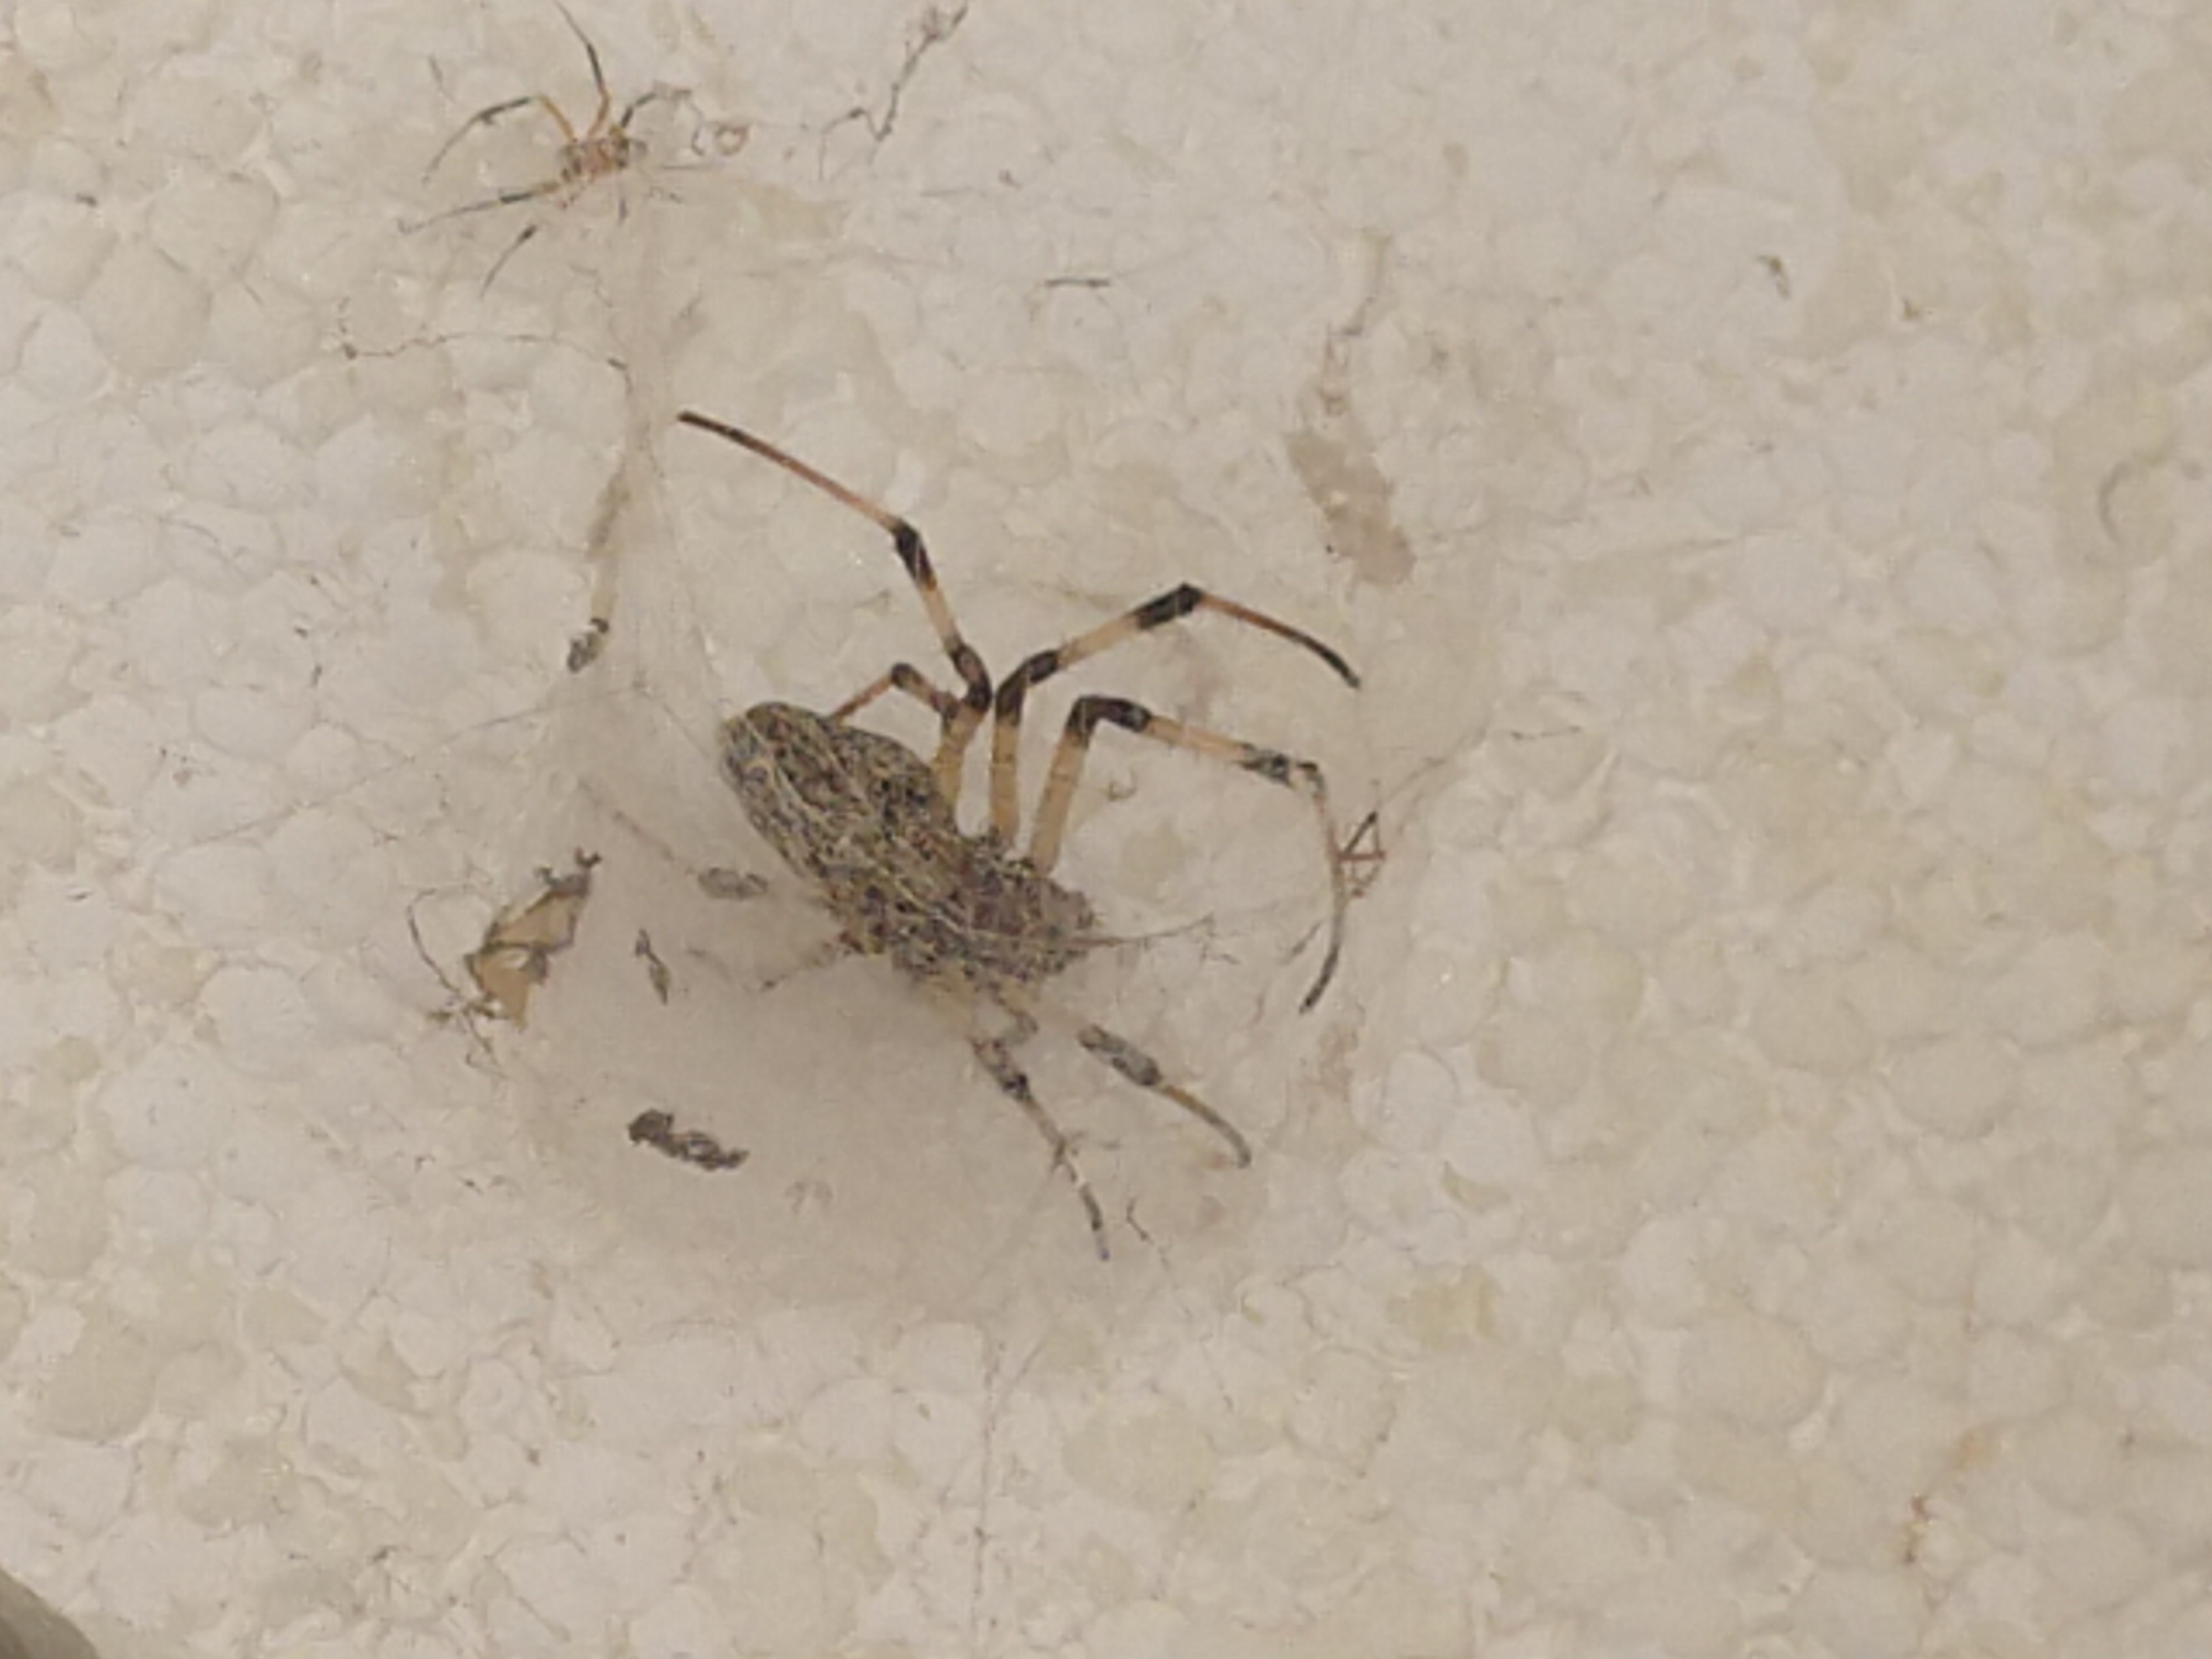 20190516 Fazenda Rema entomofauna teias de aranha super resistentes (7)